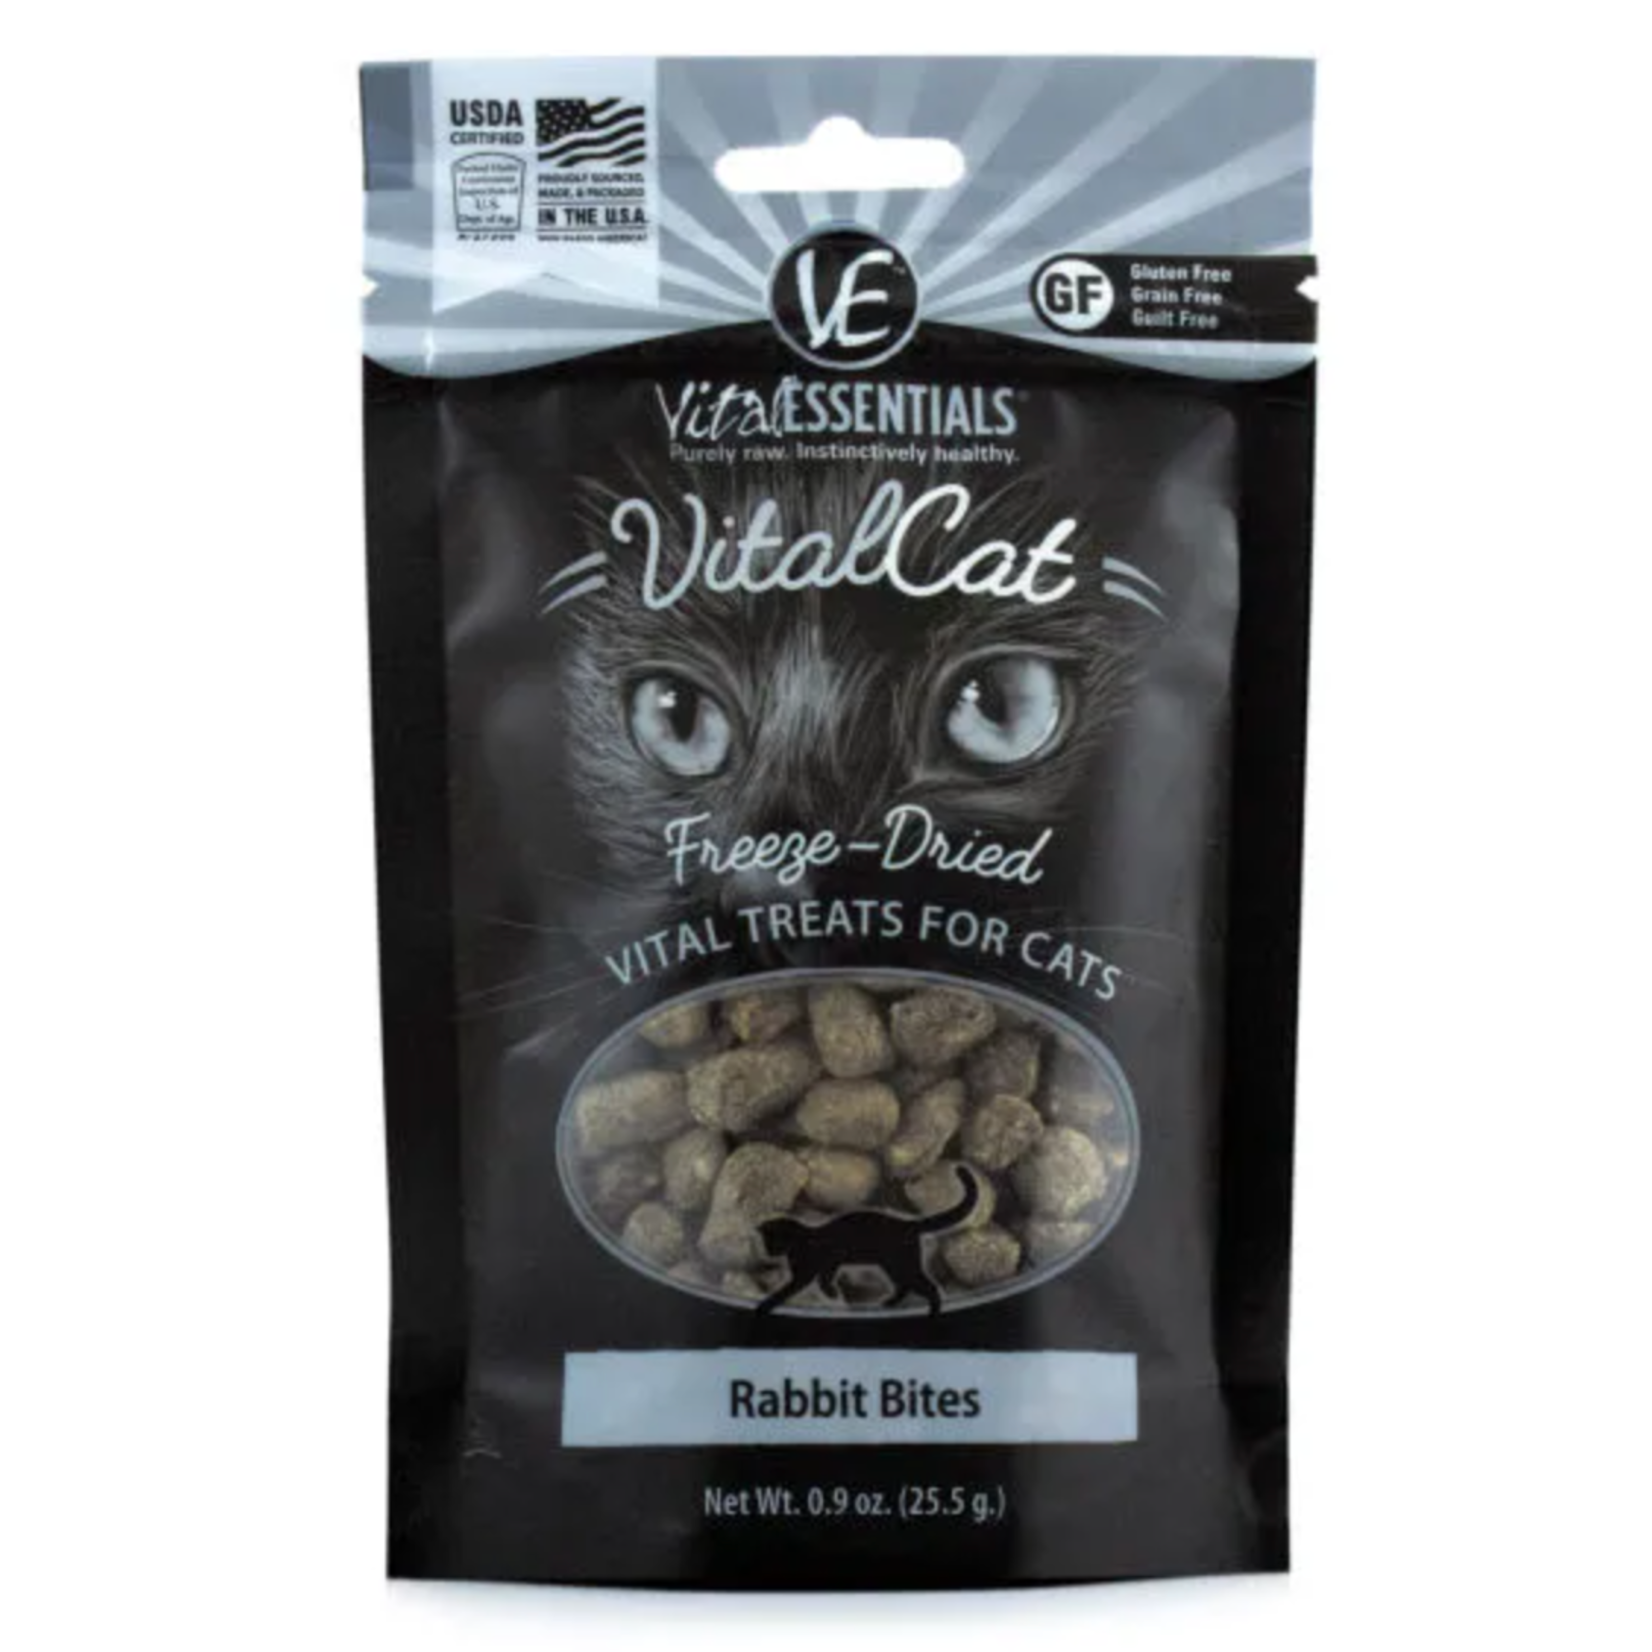 Vital Essentials VE: Vital Cat: Freeze-Dried Rabbit Bites 25.5g